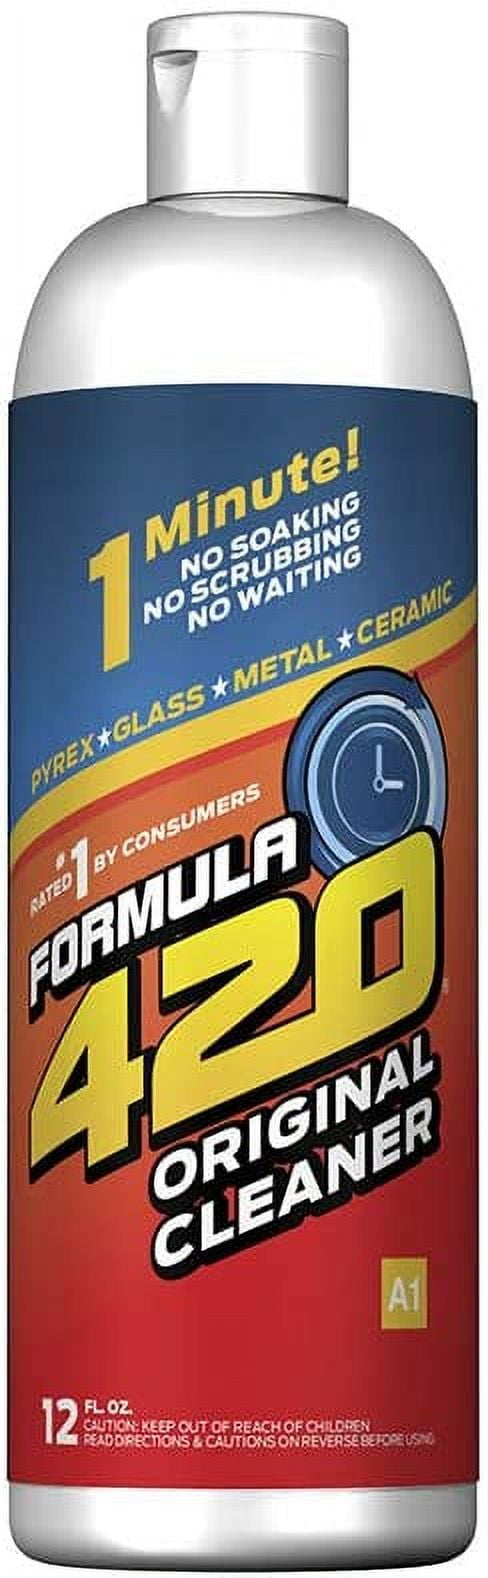 Formula 420 Cleaner - Glass, Metal & Ceramic Cleaner [12 fl oz]